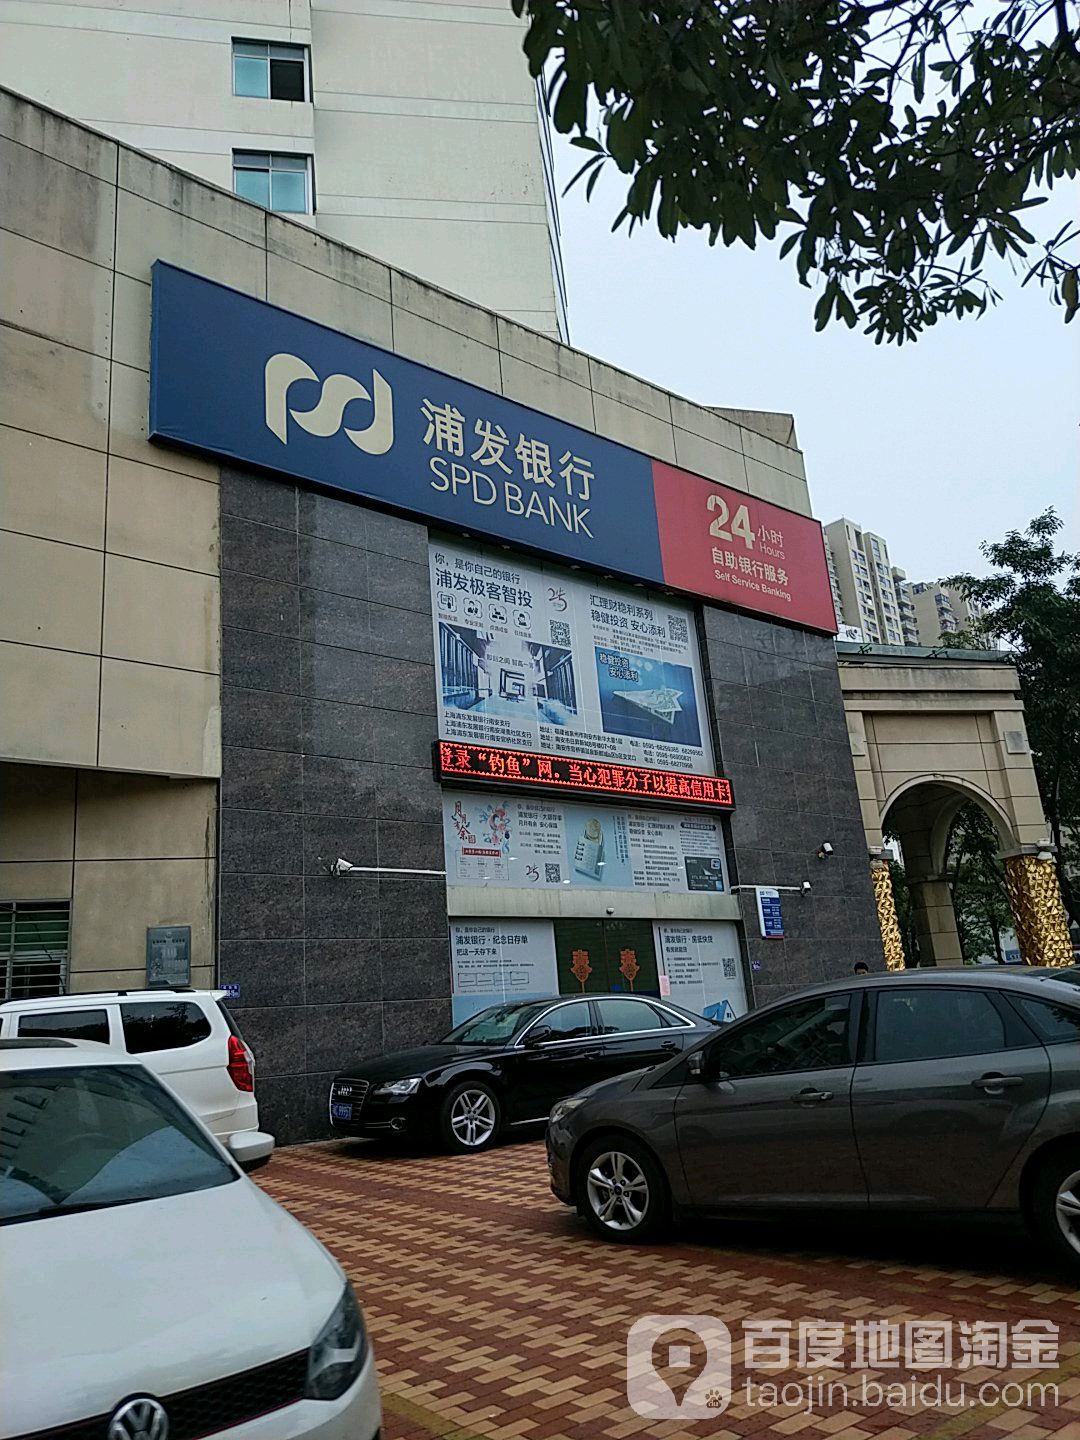 上海浦東發展銀行24小時自助銀行(泉州南安支行)